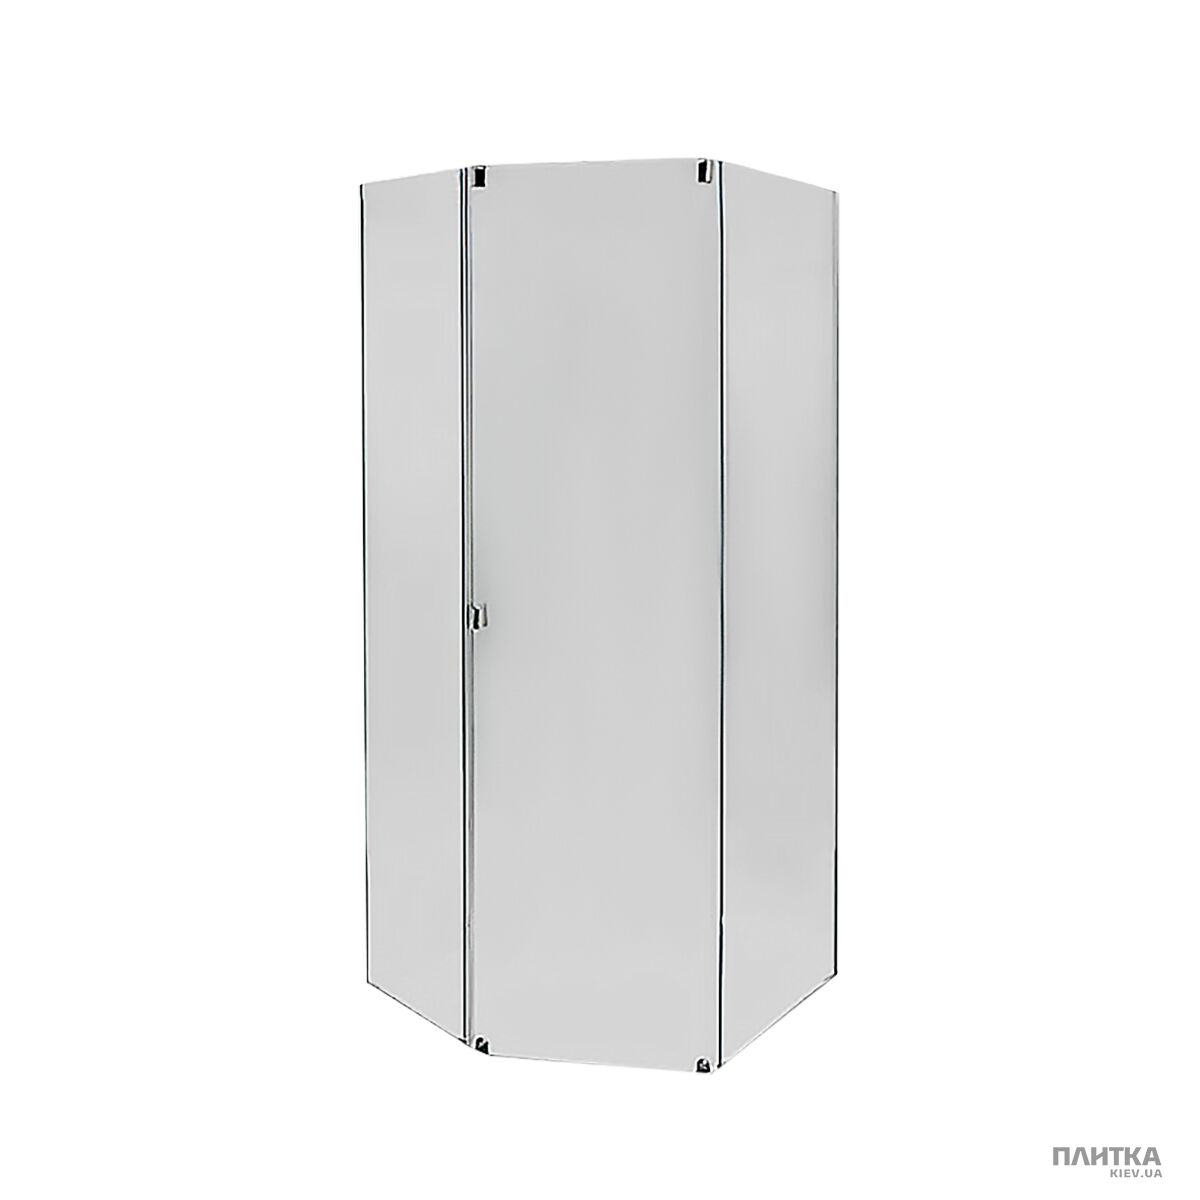 Комплектующие: IDO Showerama 8-5 4985122015 Передние стенки и двери, фронтальная панель белая белый,стекло прозрачное